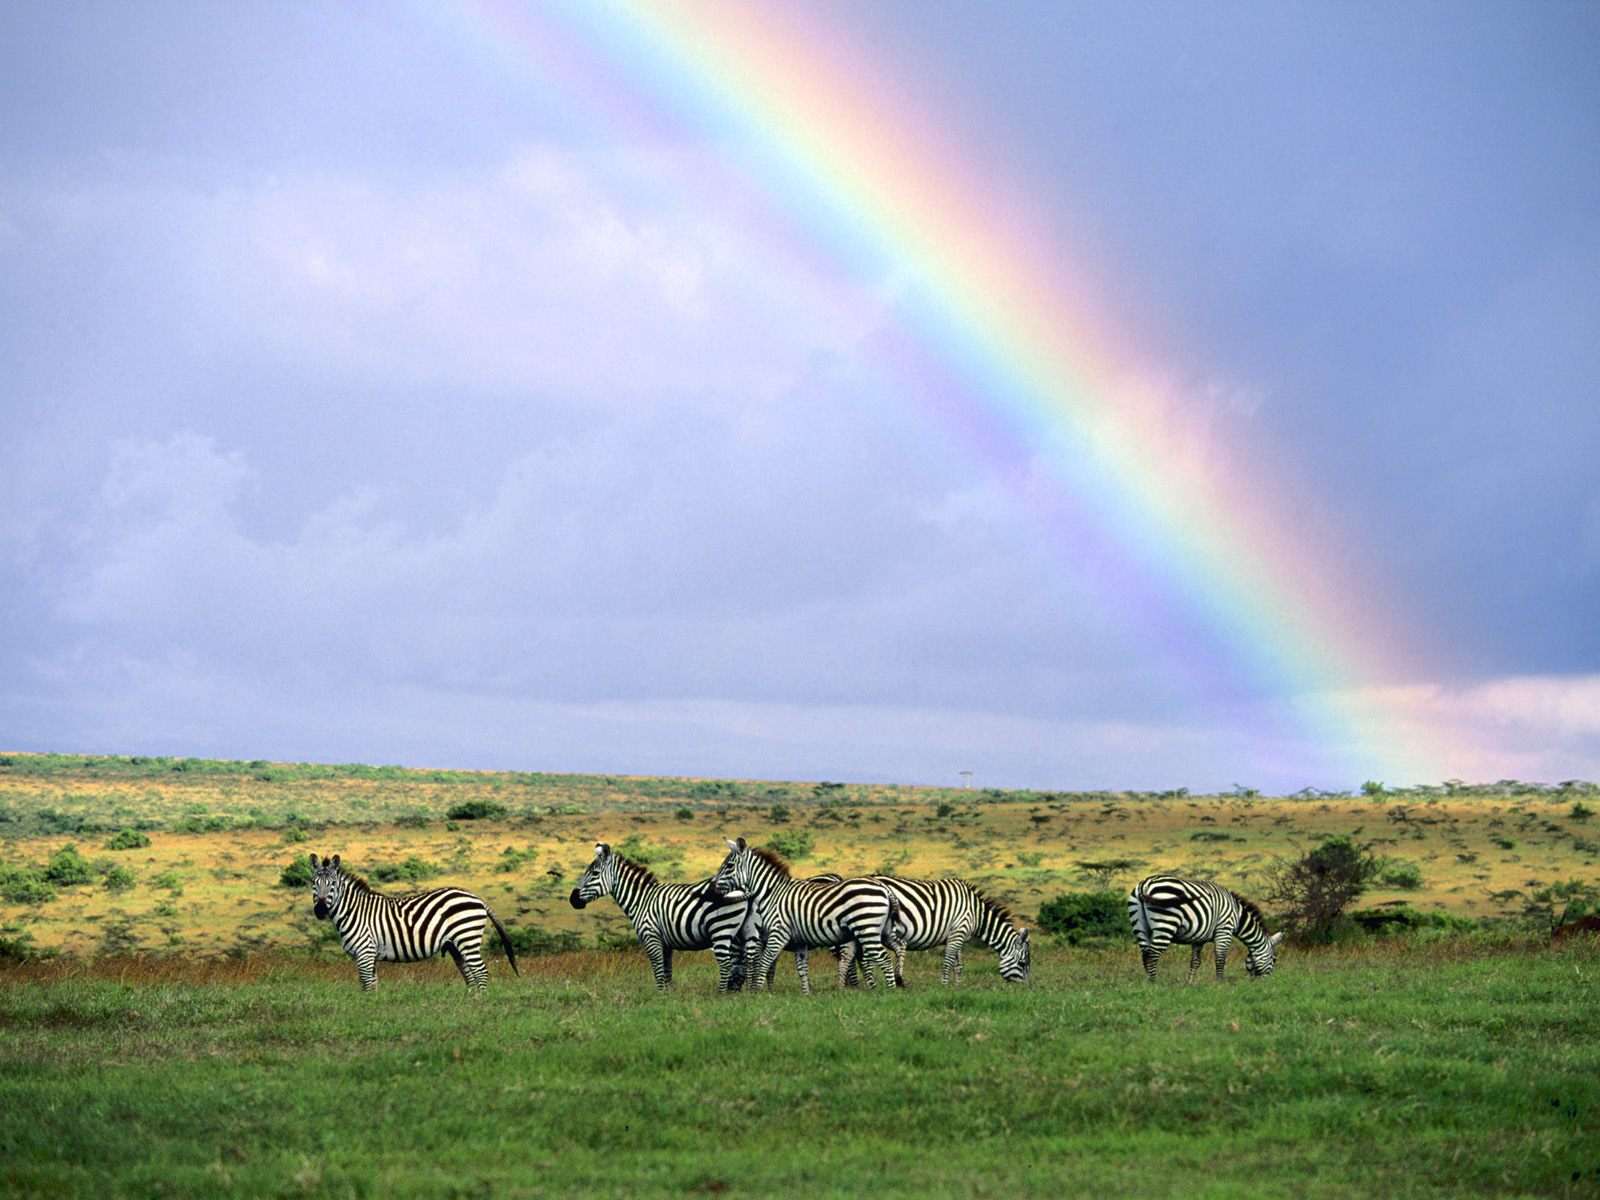 Зебры и радуга, фото обои, фотография картинка